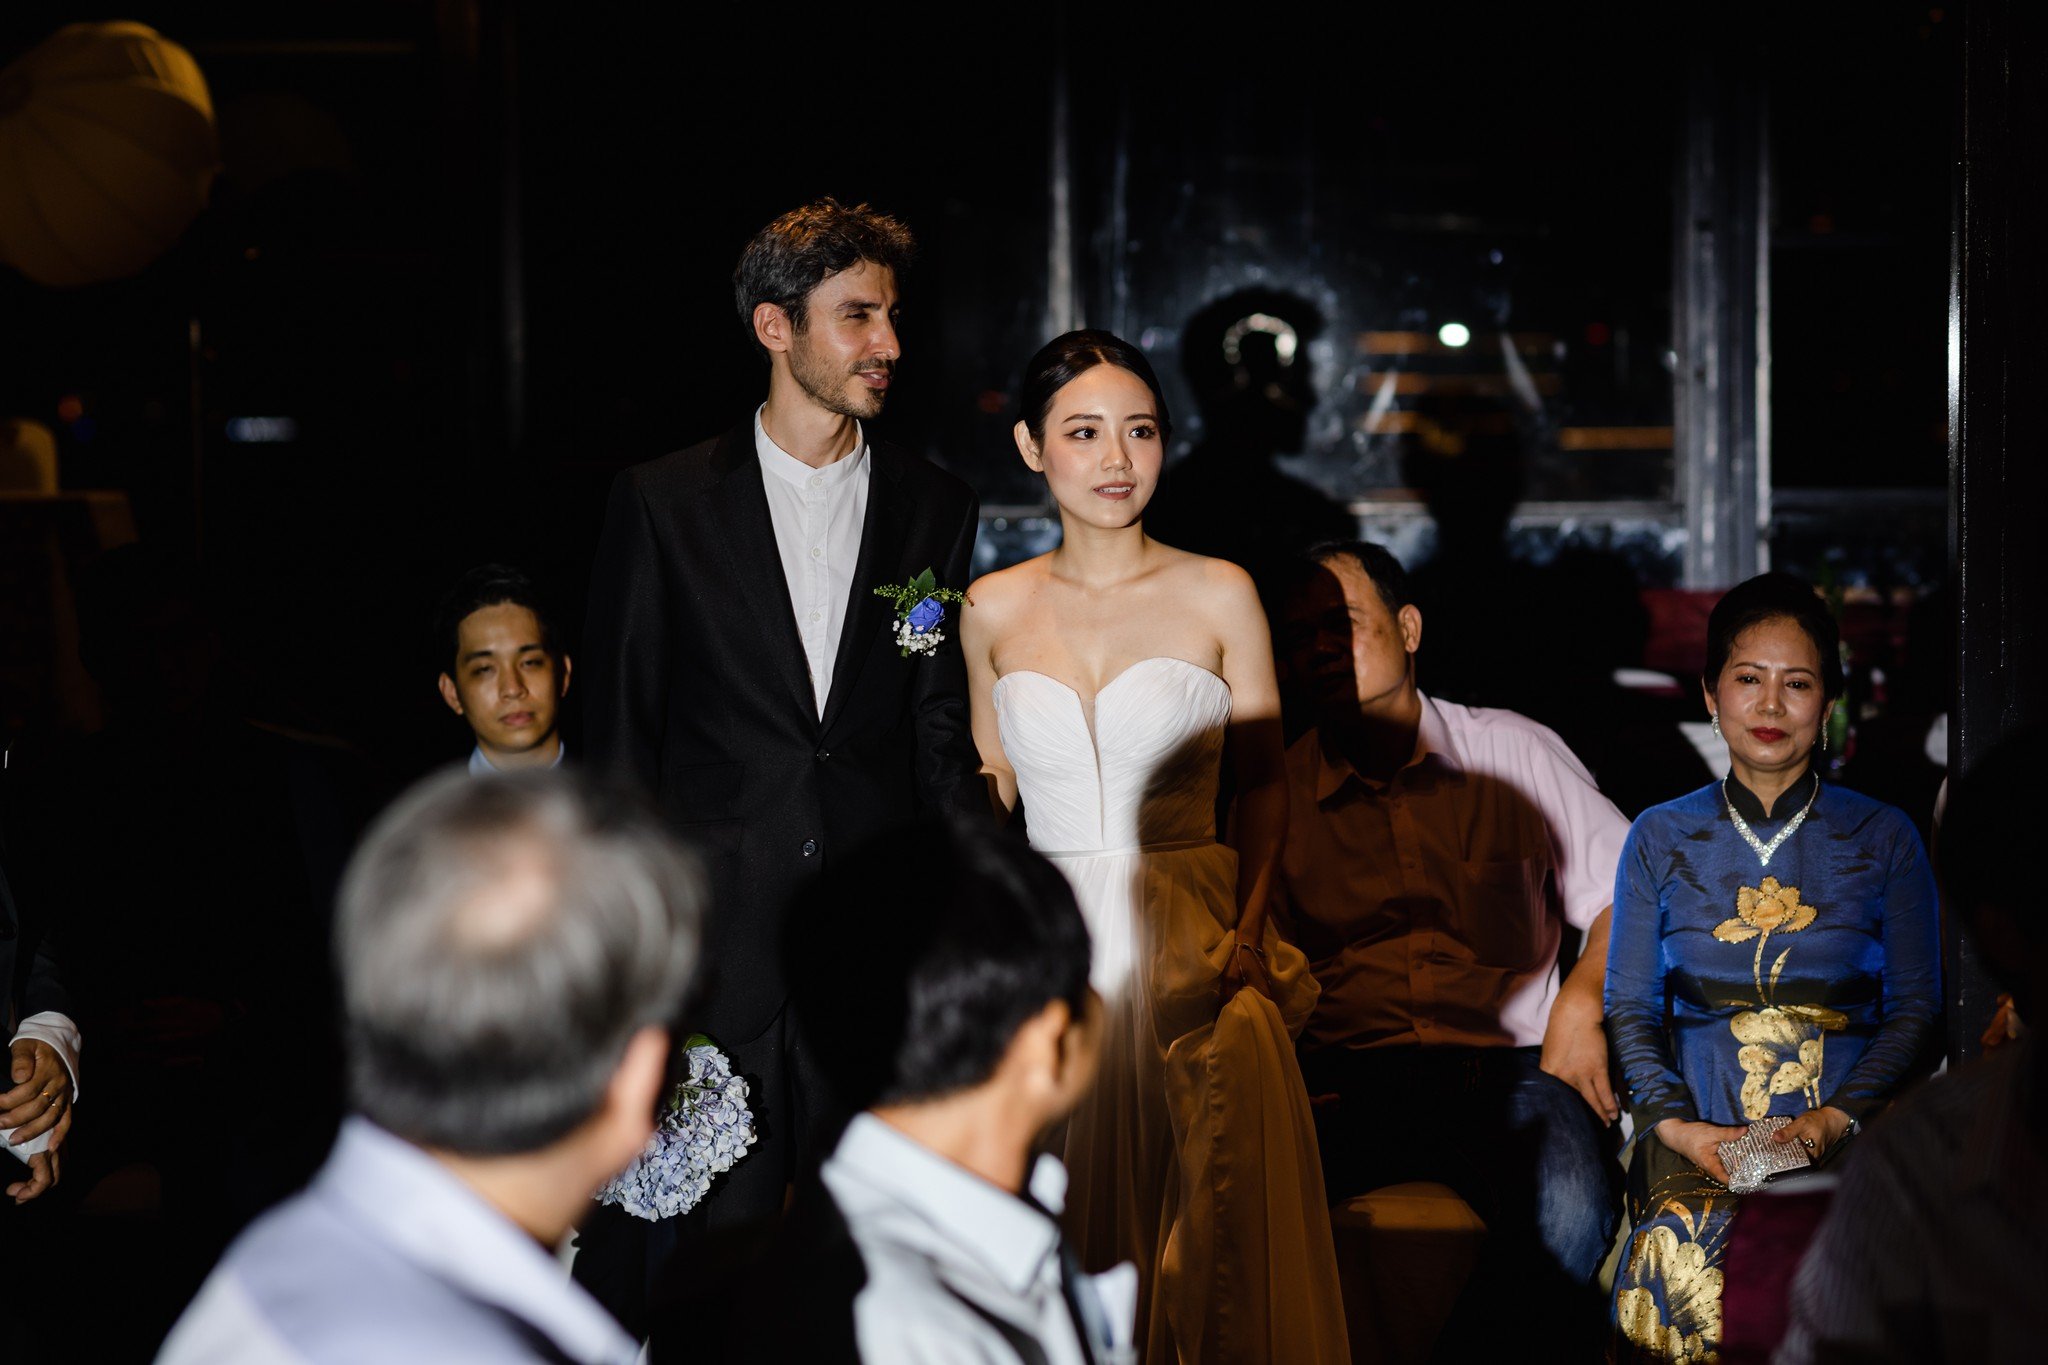 Đám cưới của cô dâu Hồng Nhung và chú rể Marco - với concept Elegance tại Én